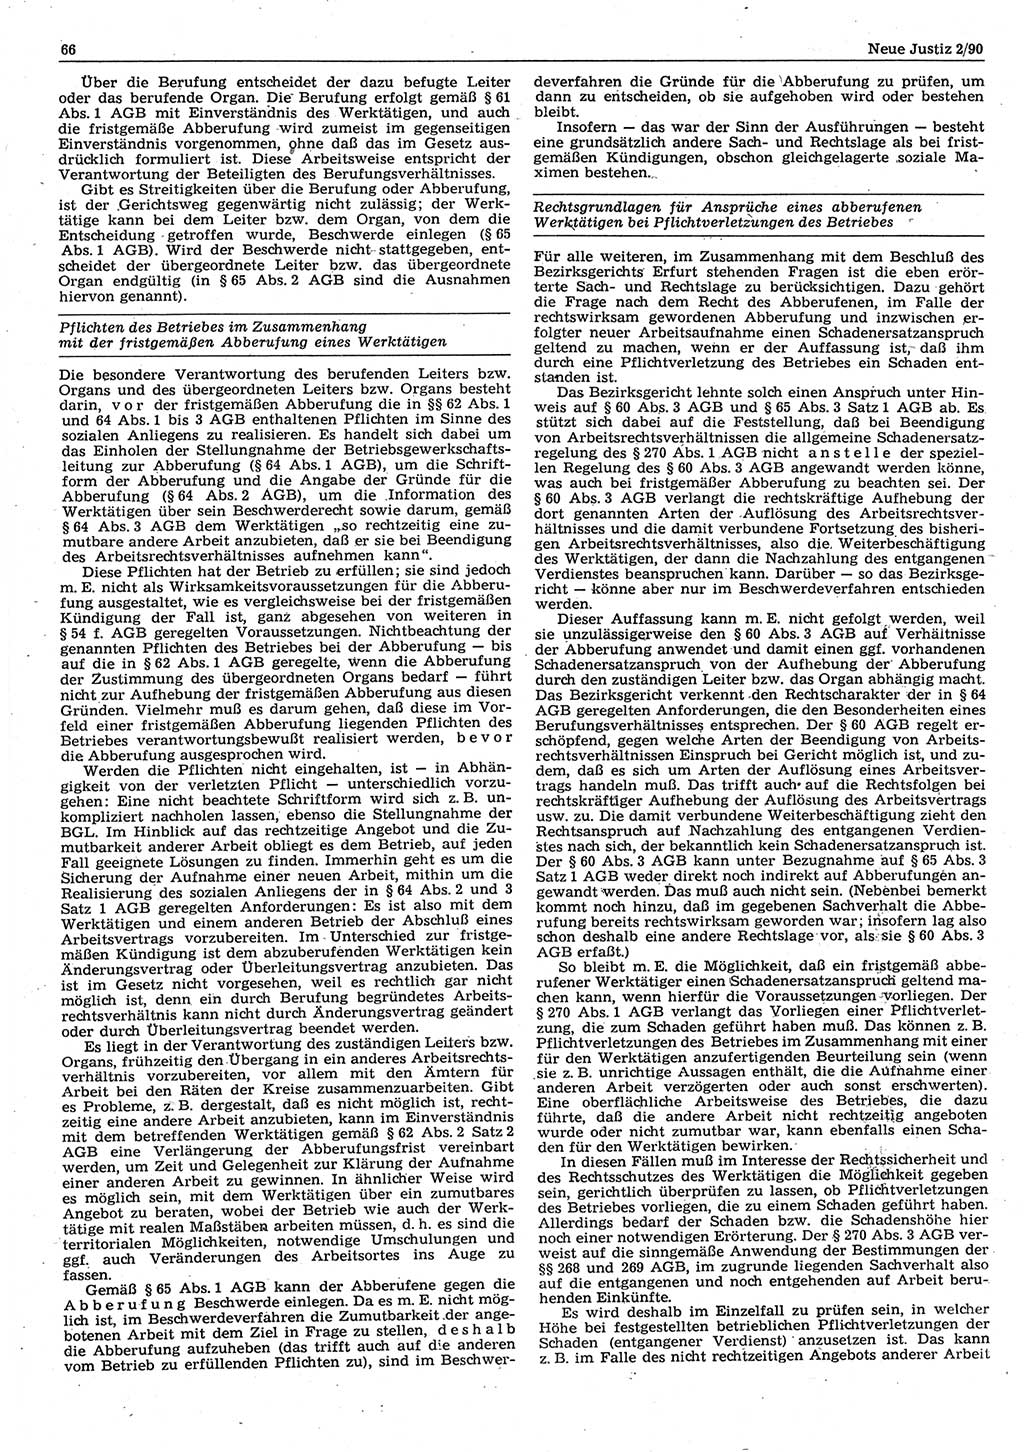 Neue Justiz (NJ), Zeitschrift für Rechtsetzung und Rechtsanwendung [Deutsche Demokratische Republik (DDR)], 44. Jahrgang 1990, Seite 66 (NJ DDR 1990, S. 66)